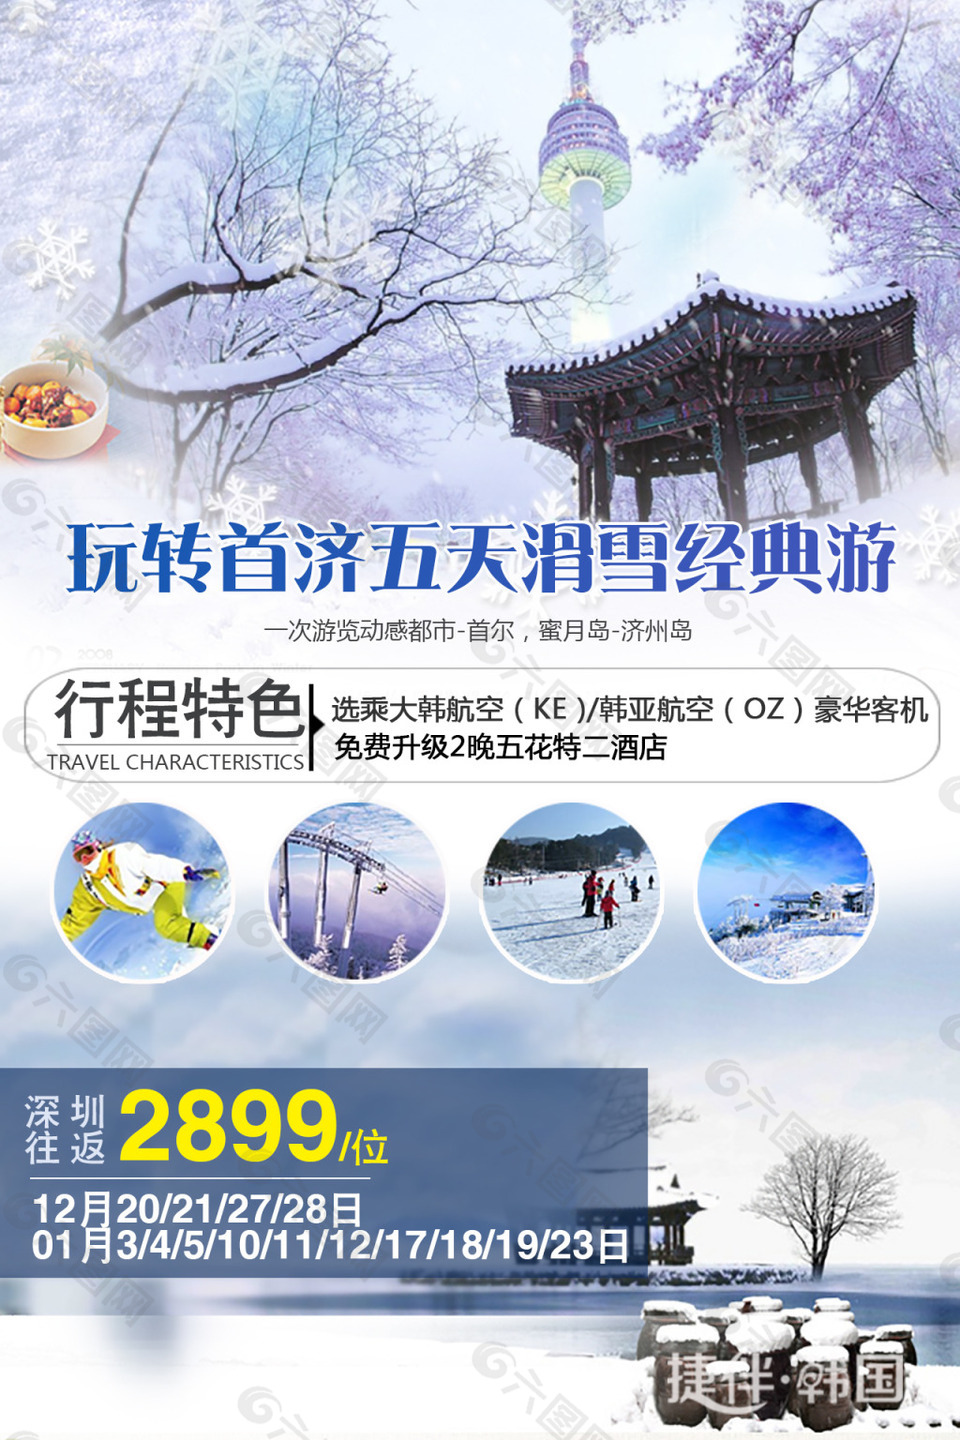 韩国旅游 冬季滑雪